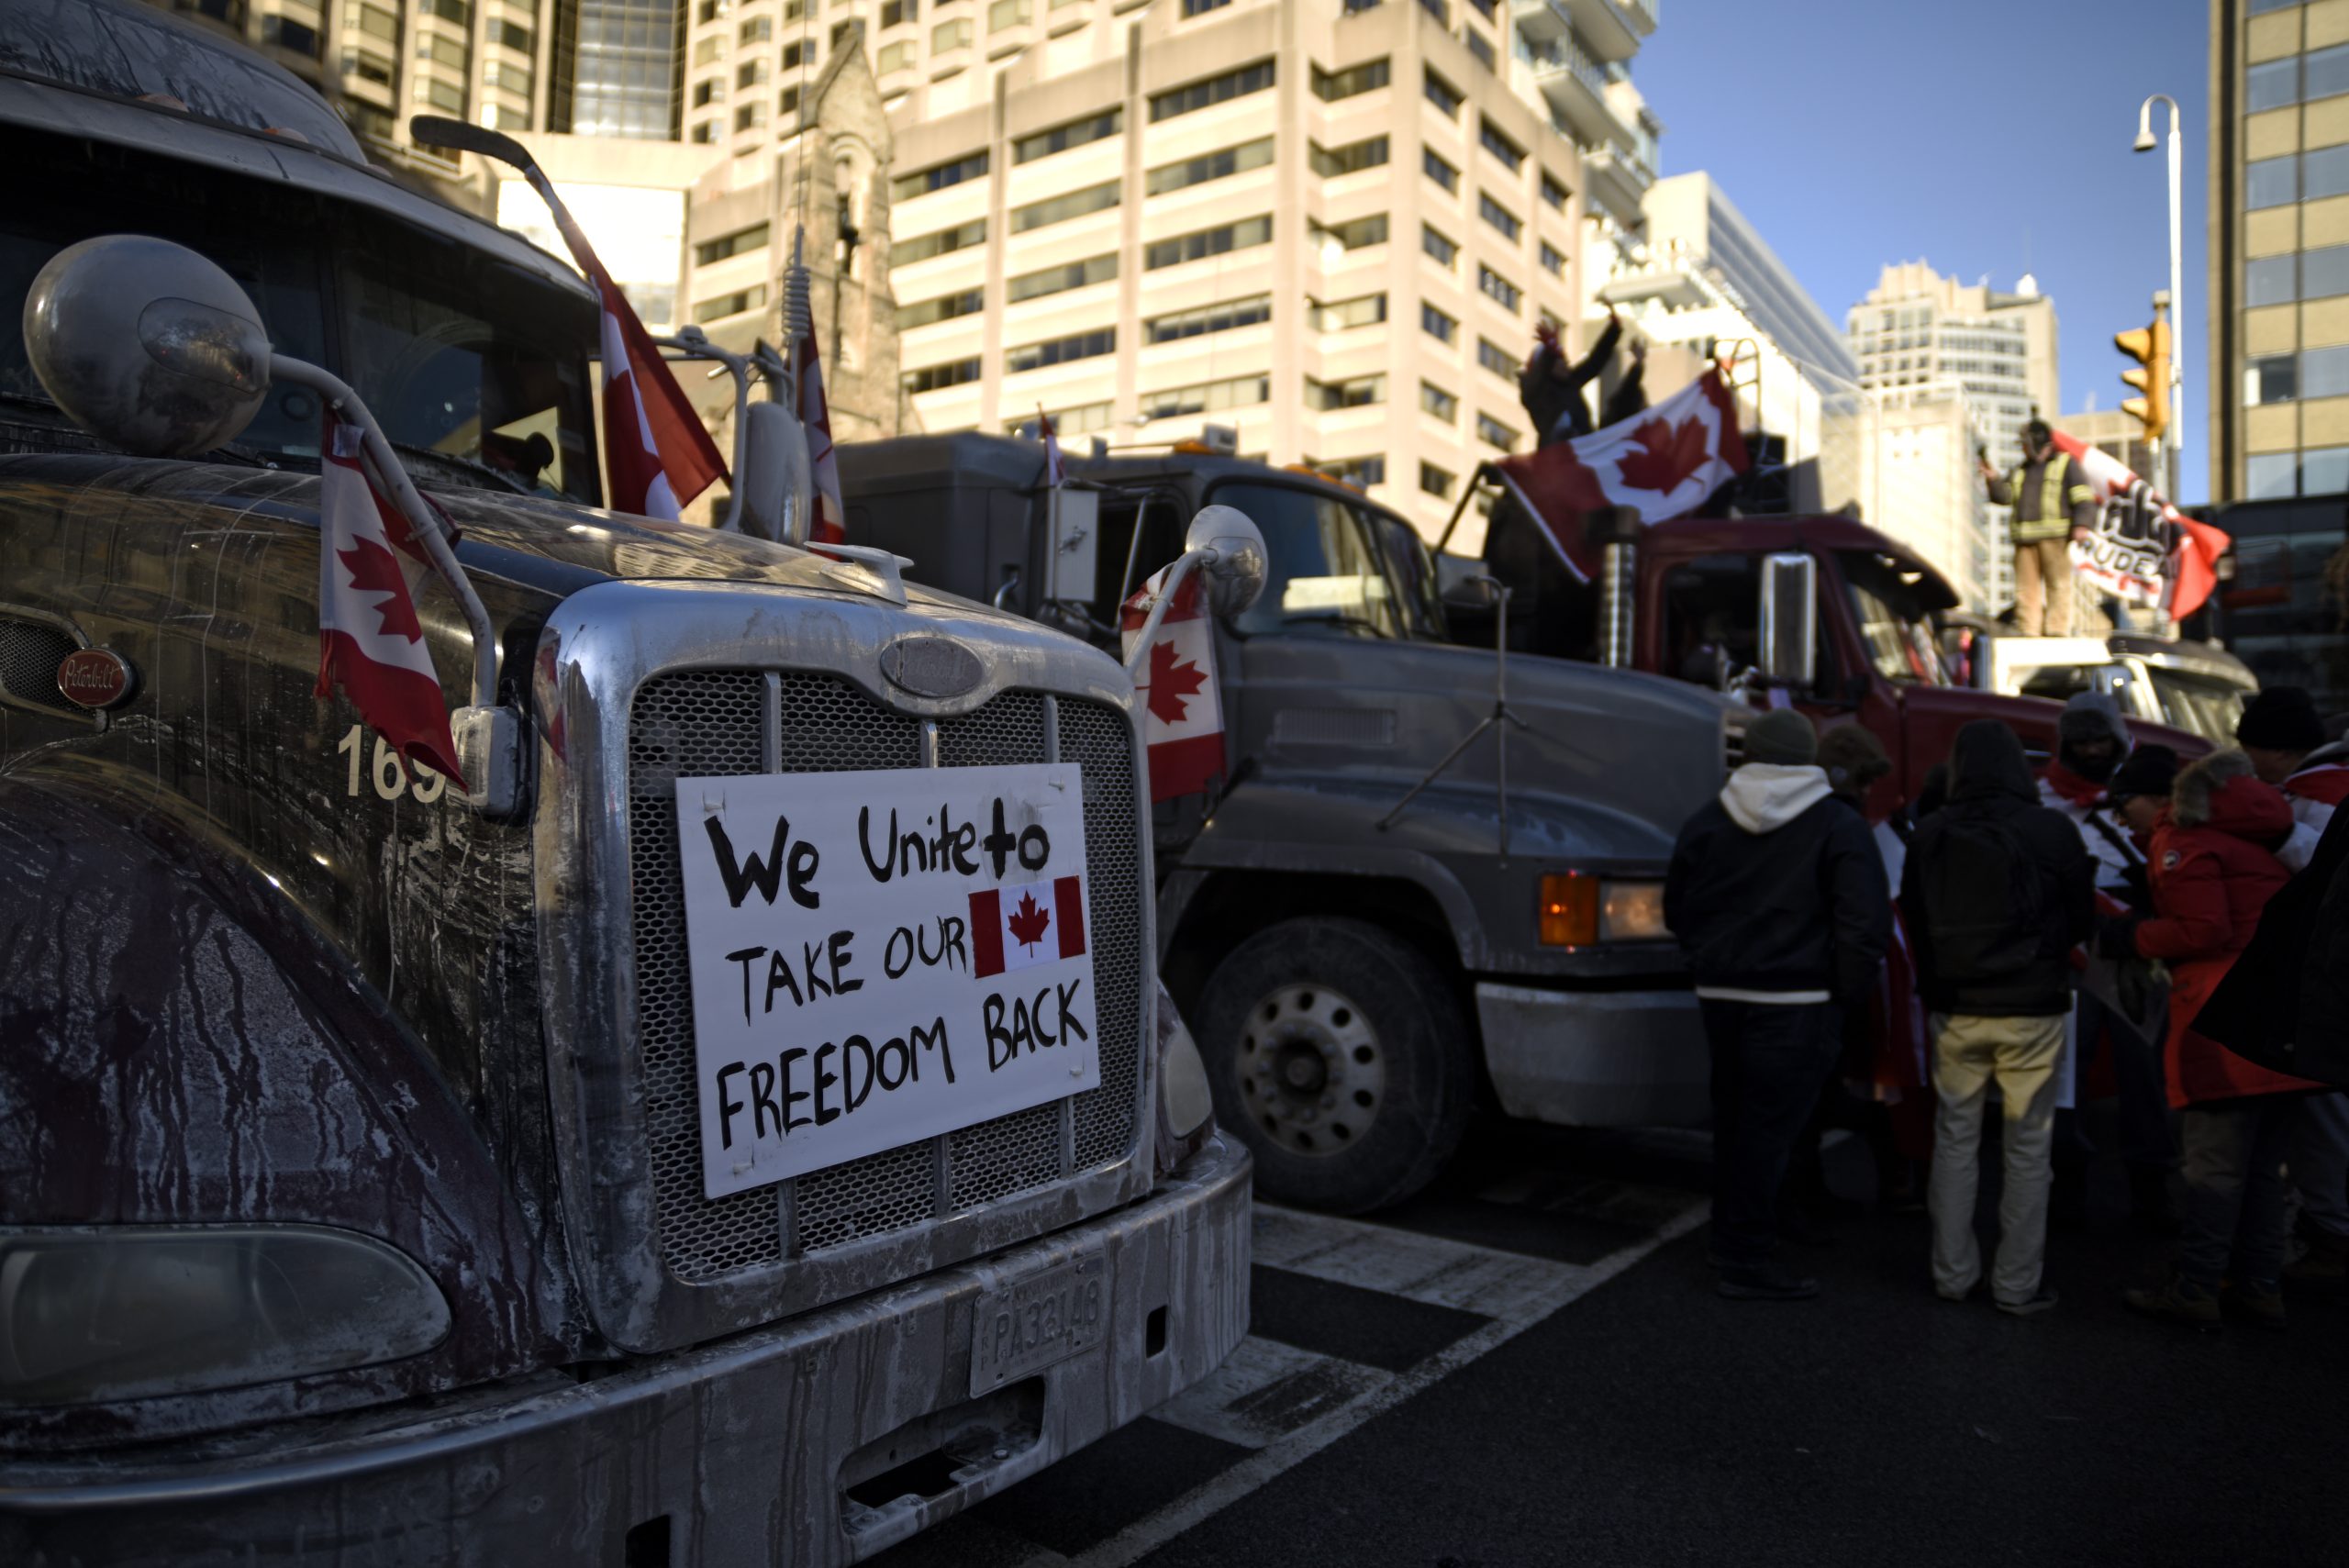 Las protestas de camioneros empiezan a dañar las economías de Canadá y EEUU